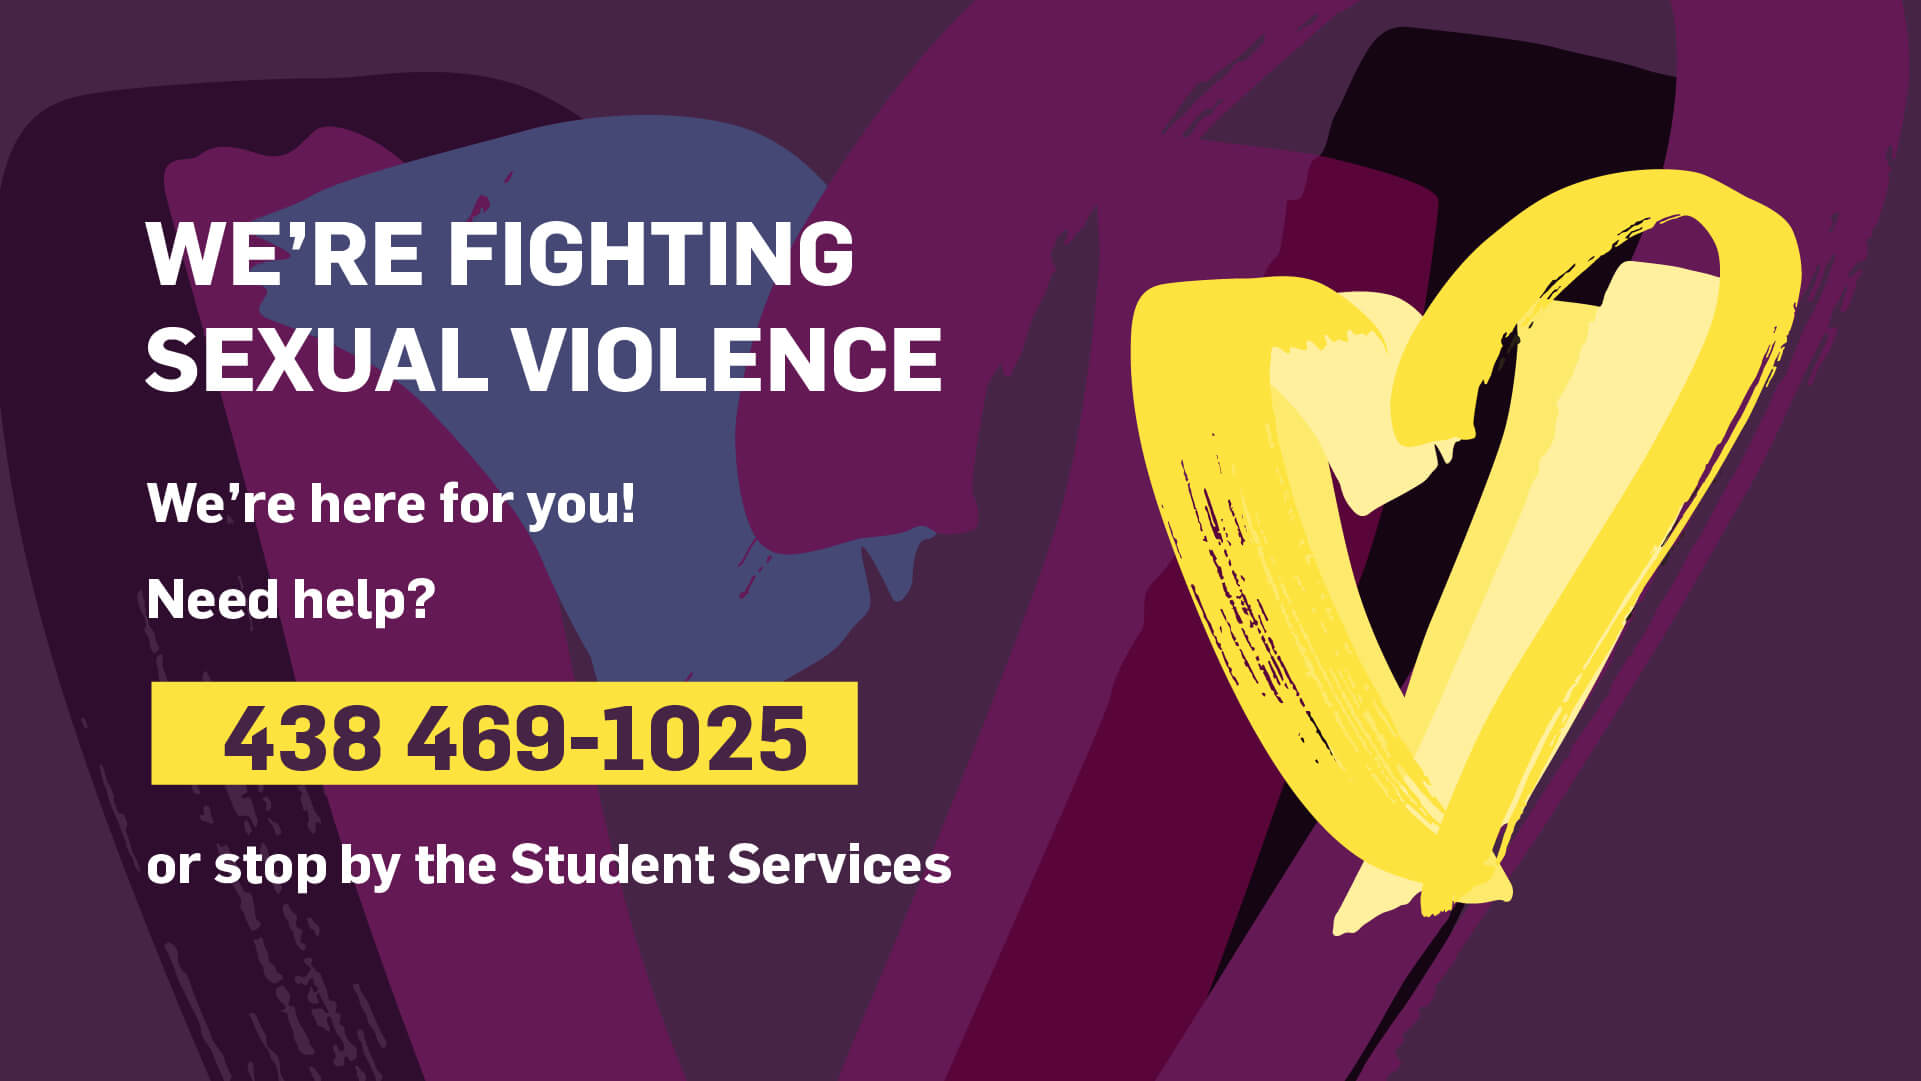 Une affiche promouvant le soutien contre la violence sexuelle, offrant de l'aide avec un numéro de contact et des informations sur les services aux étudiants.